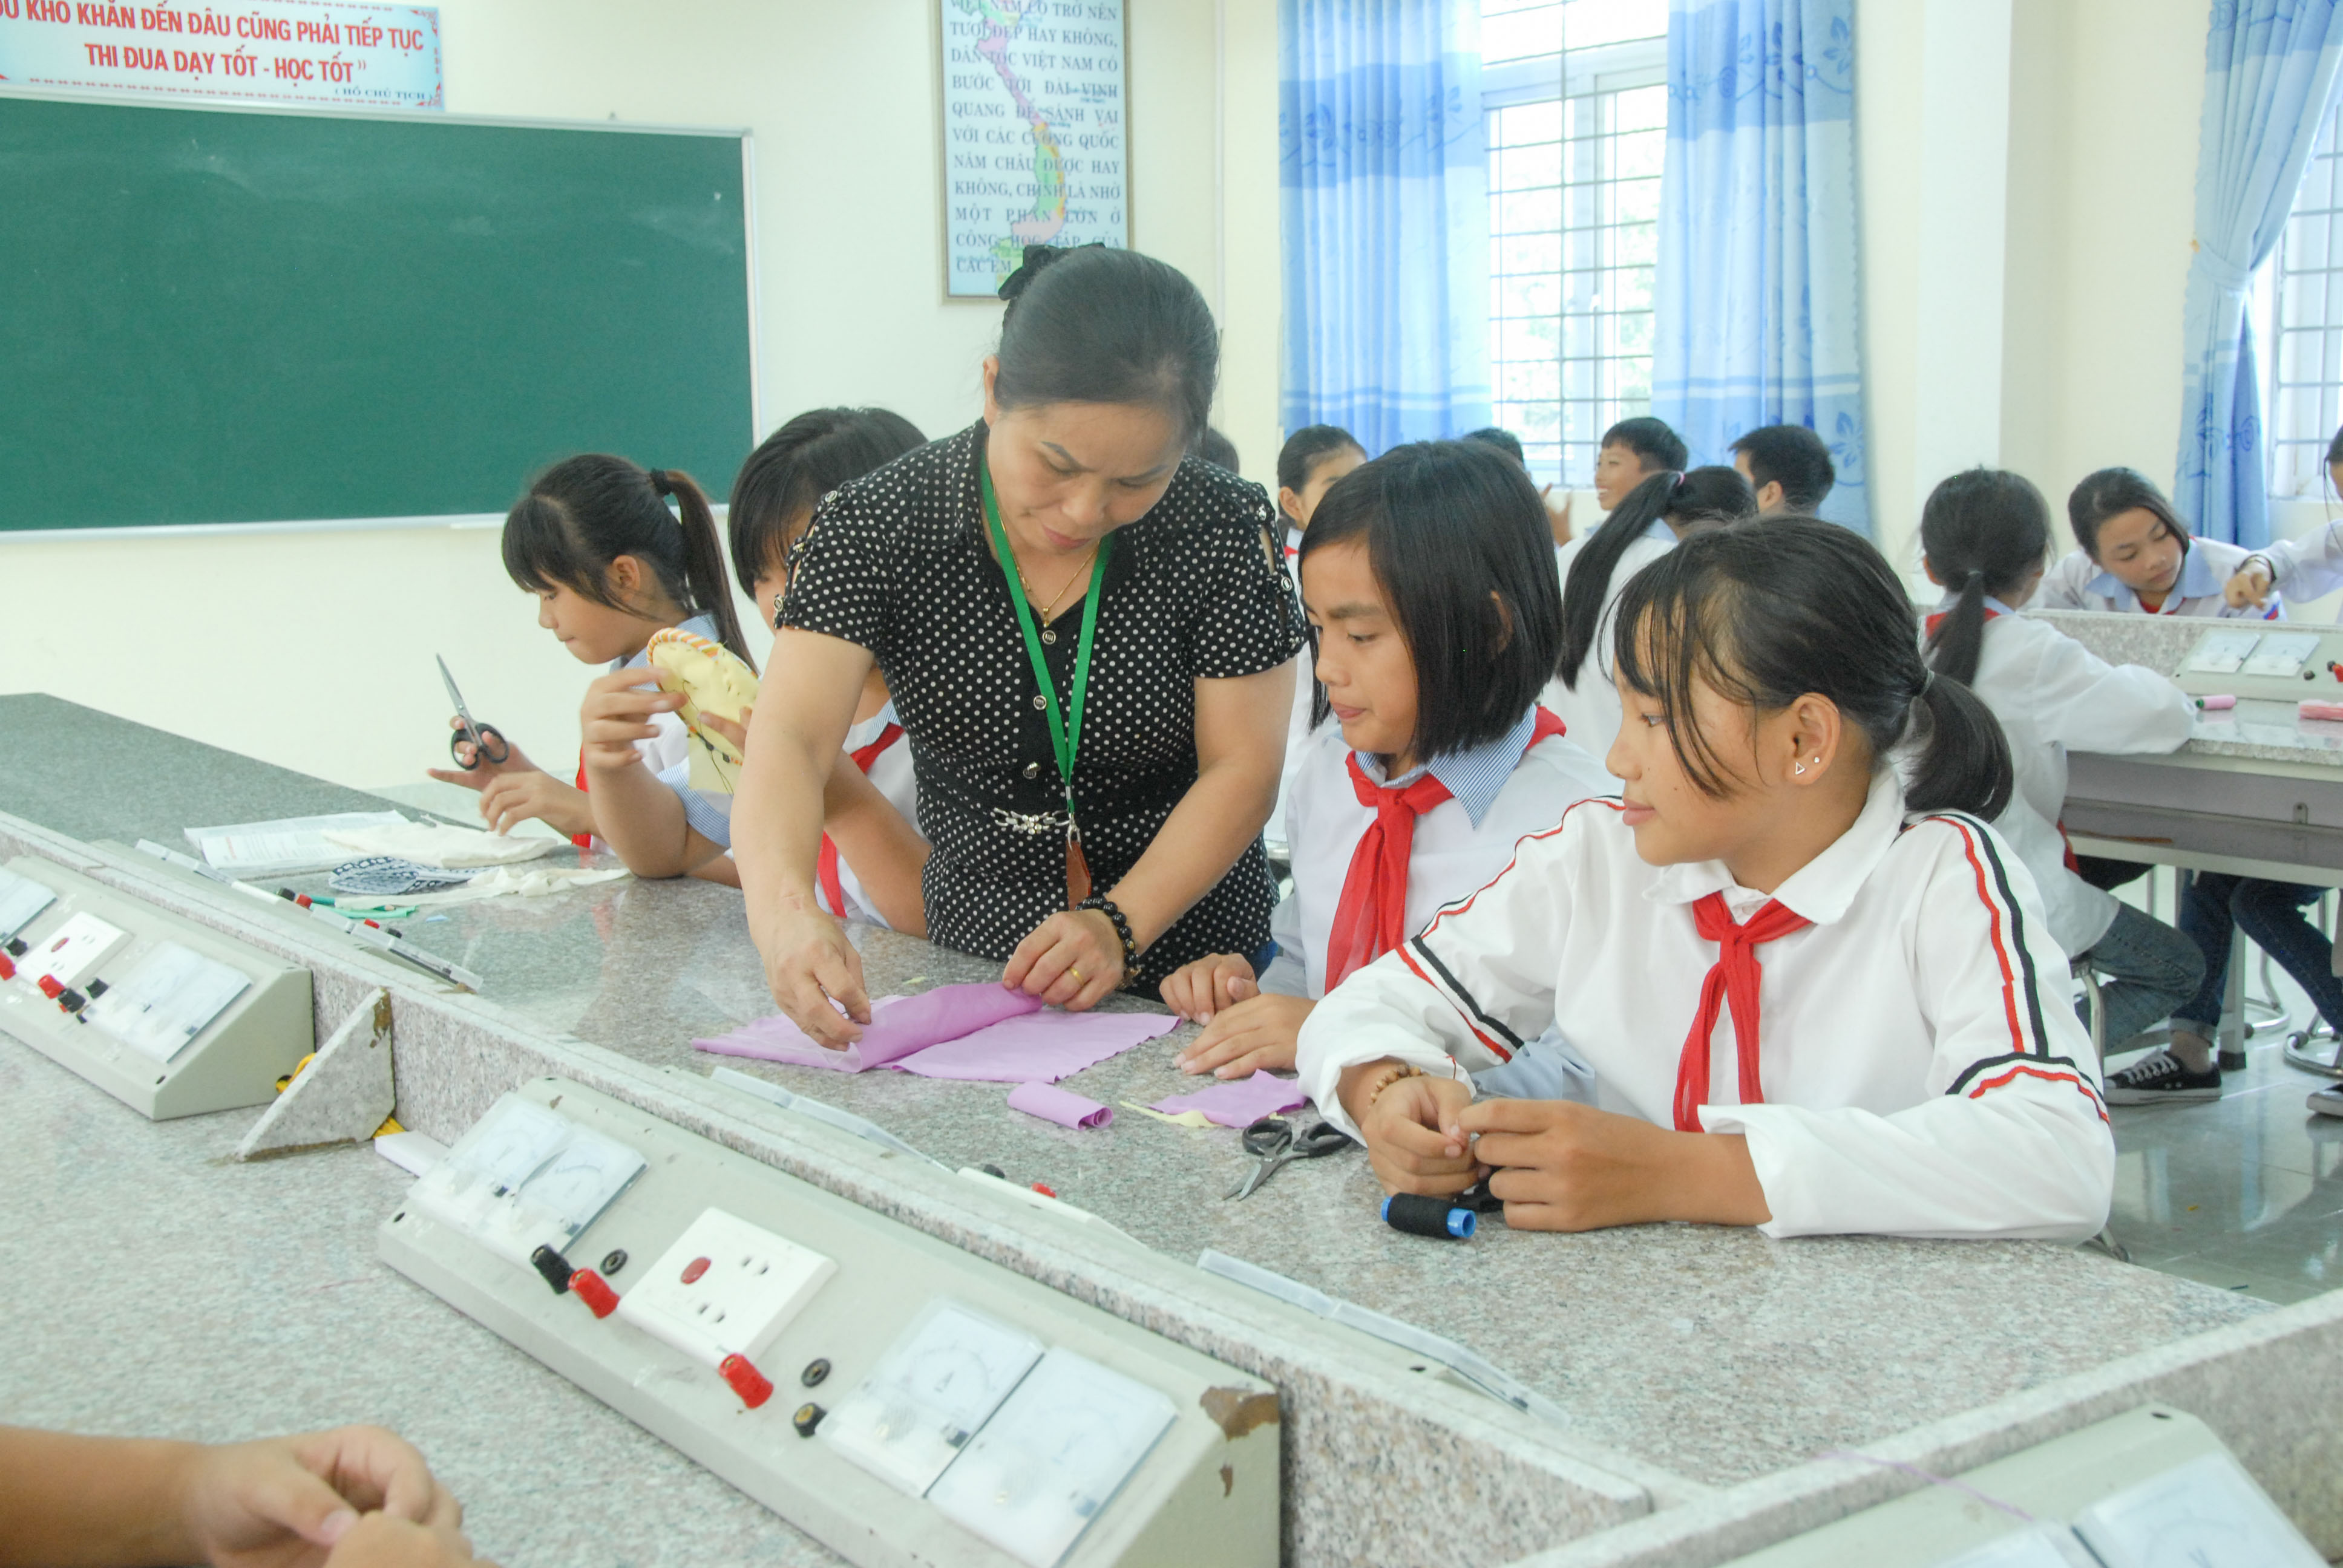 Trường THCS Quảng Chính (xã Quảng Chính, huyện Hải Hà) đã có cơ sở vật chất và đội ngũ cán bộ, giáo viên đạt chuẩn quốc gia.